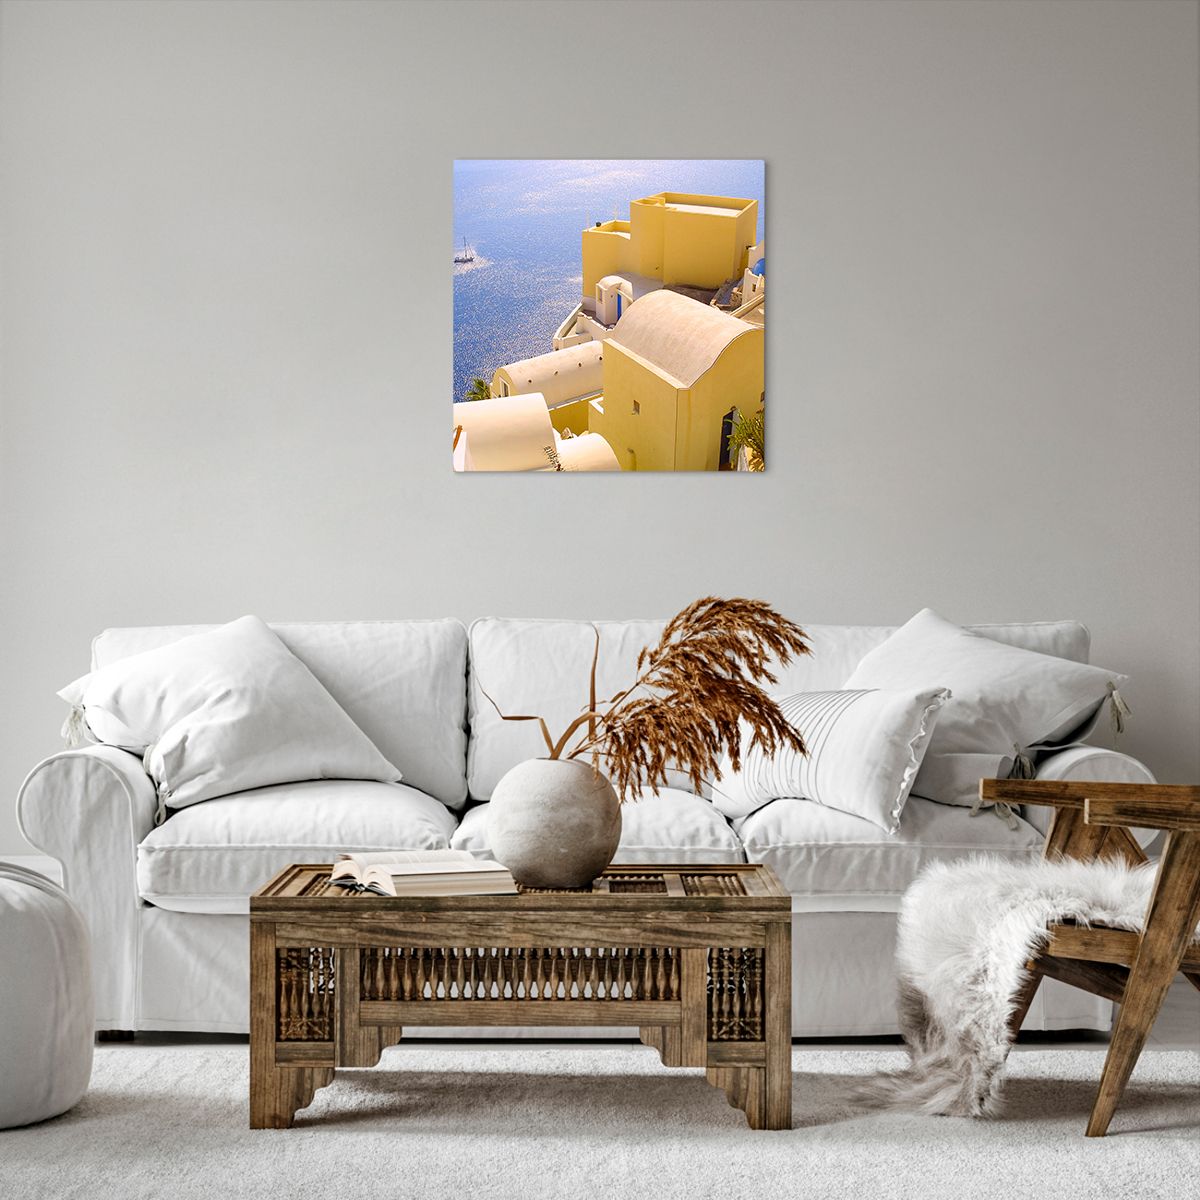 Impression sur toile Paysage, Impression sur toile Santorin, Impression sur toile Grèce, Impression sur toile  Île, Impression sur toile Mer